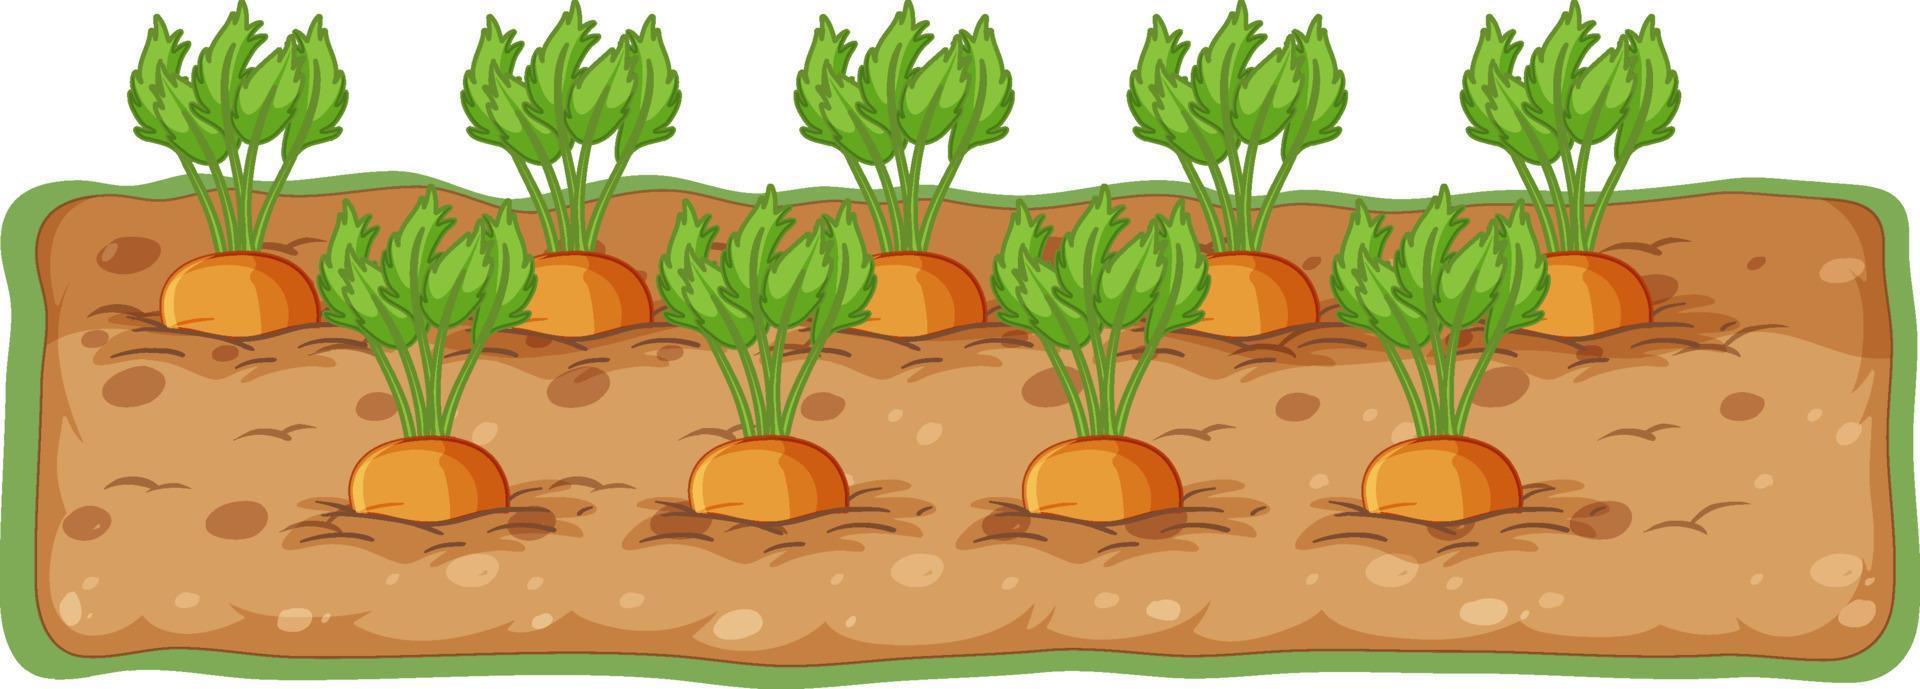 Carrots growing in soil cartoon vector